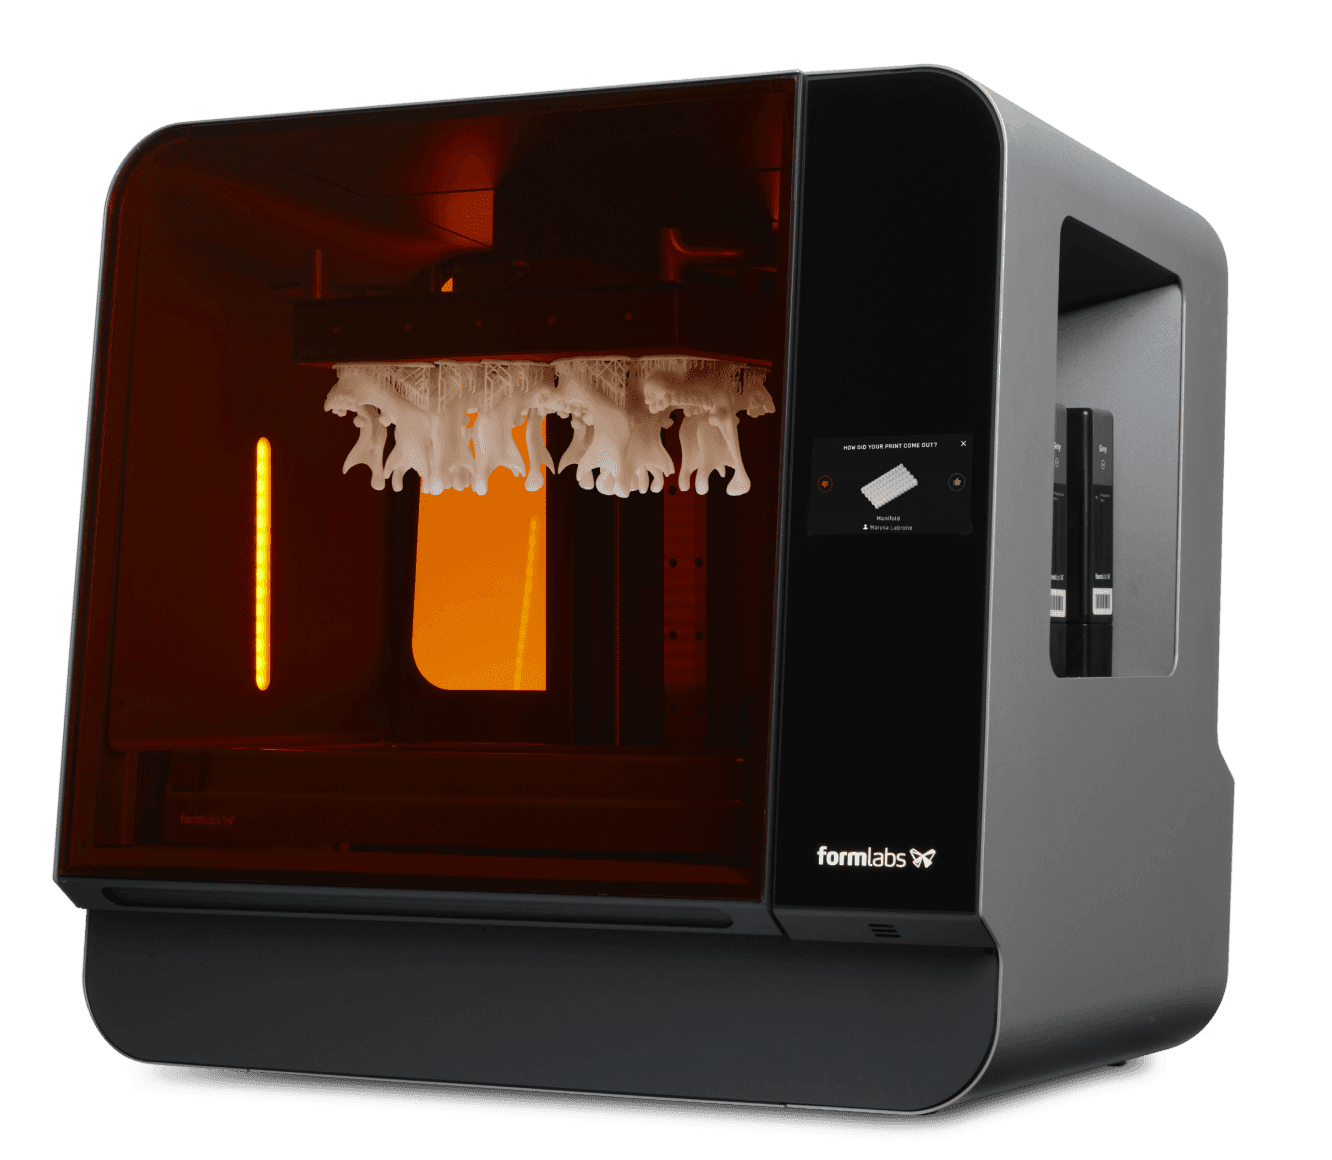 Mejores modelos de impresión 3D Oral B・203 archivos para descargar・Cults